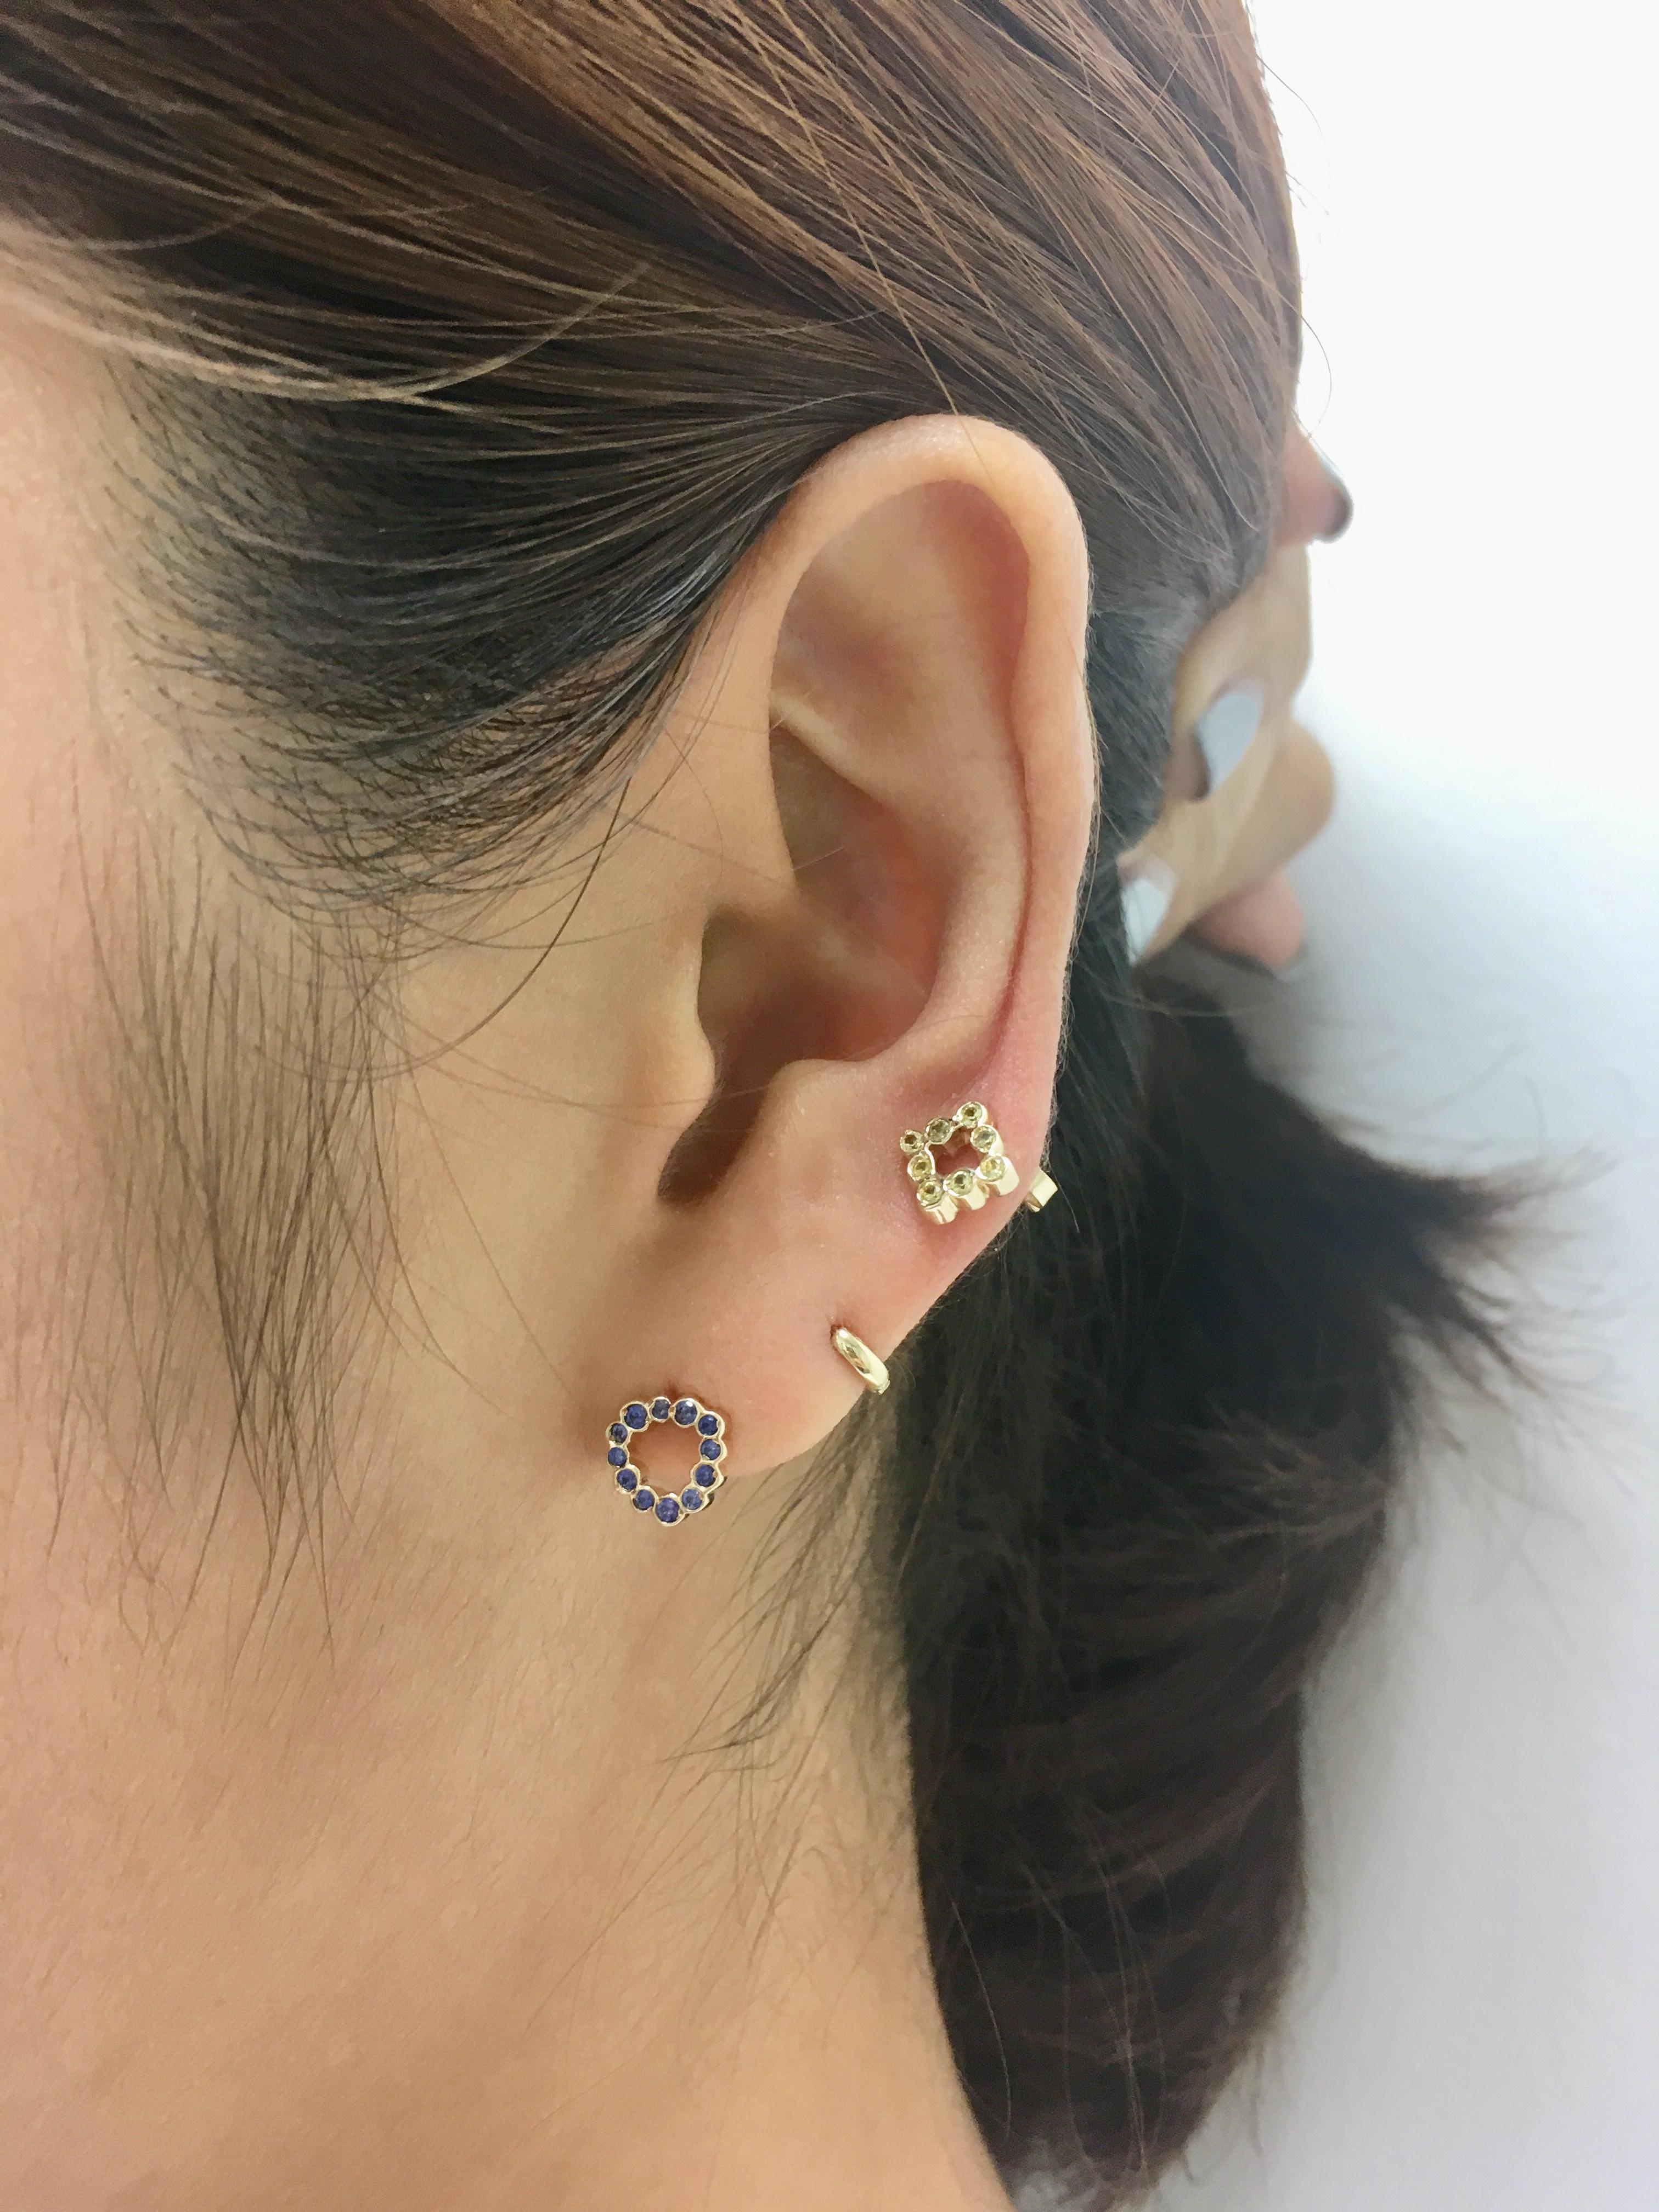 Tragen Sie diese dreieckigen Miniatur-Ohrstecker mit blauen Saphiren für einen
farbe auf deinen Ohren. Kombinieren Sie sie mit Ihren Lieblings-Ohrringen für einen lustigen, unzusammenhängenden Look.

Verkauft als einzelner Ohrring (nicht als